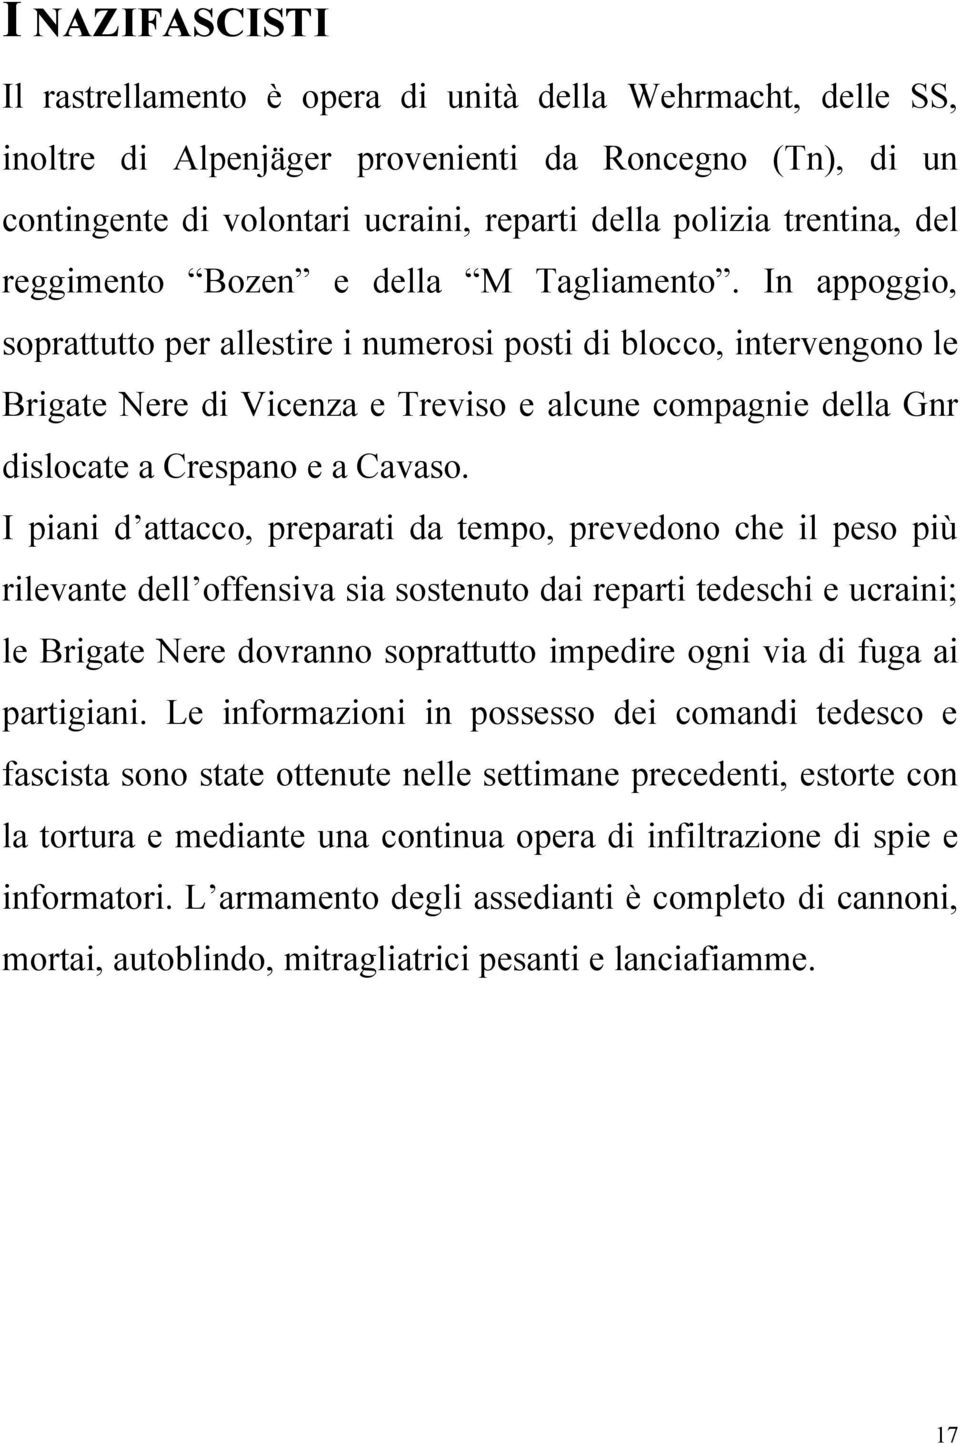 In appoggio, soprattutto per allestire i numerosi posti di blocco, intervengono le Brigate Nere di Vicenza e Treviso e alcune compagnie della Gnr dislocate a Crespano e a Cavaso.